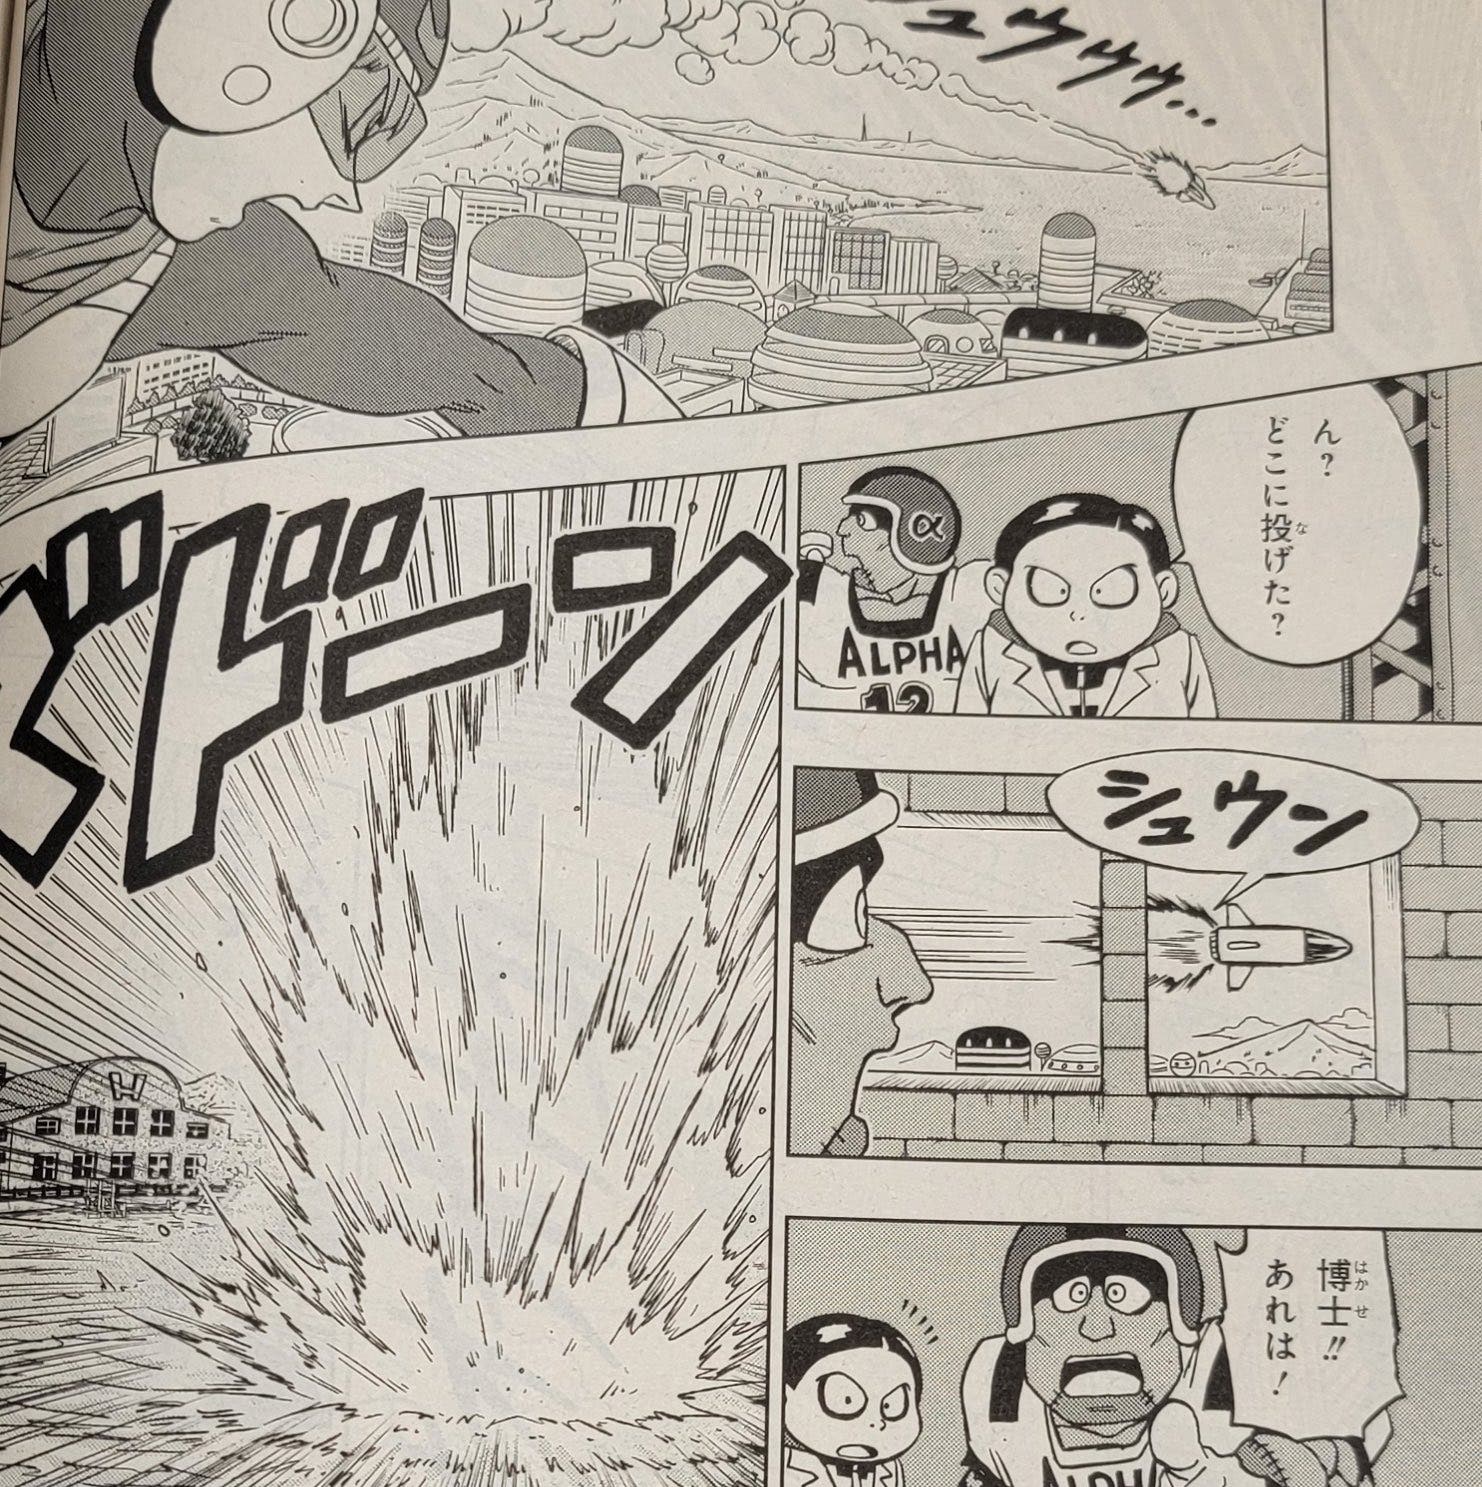 Dragon Ball Super: ¿Cuándo se estrena el capítulo 89 del manga